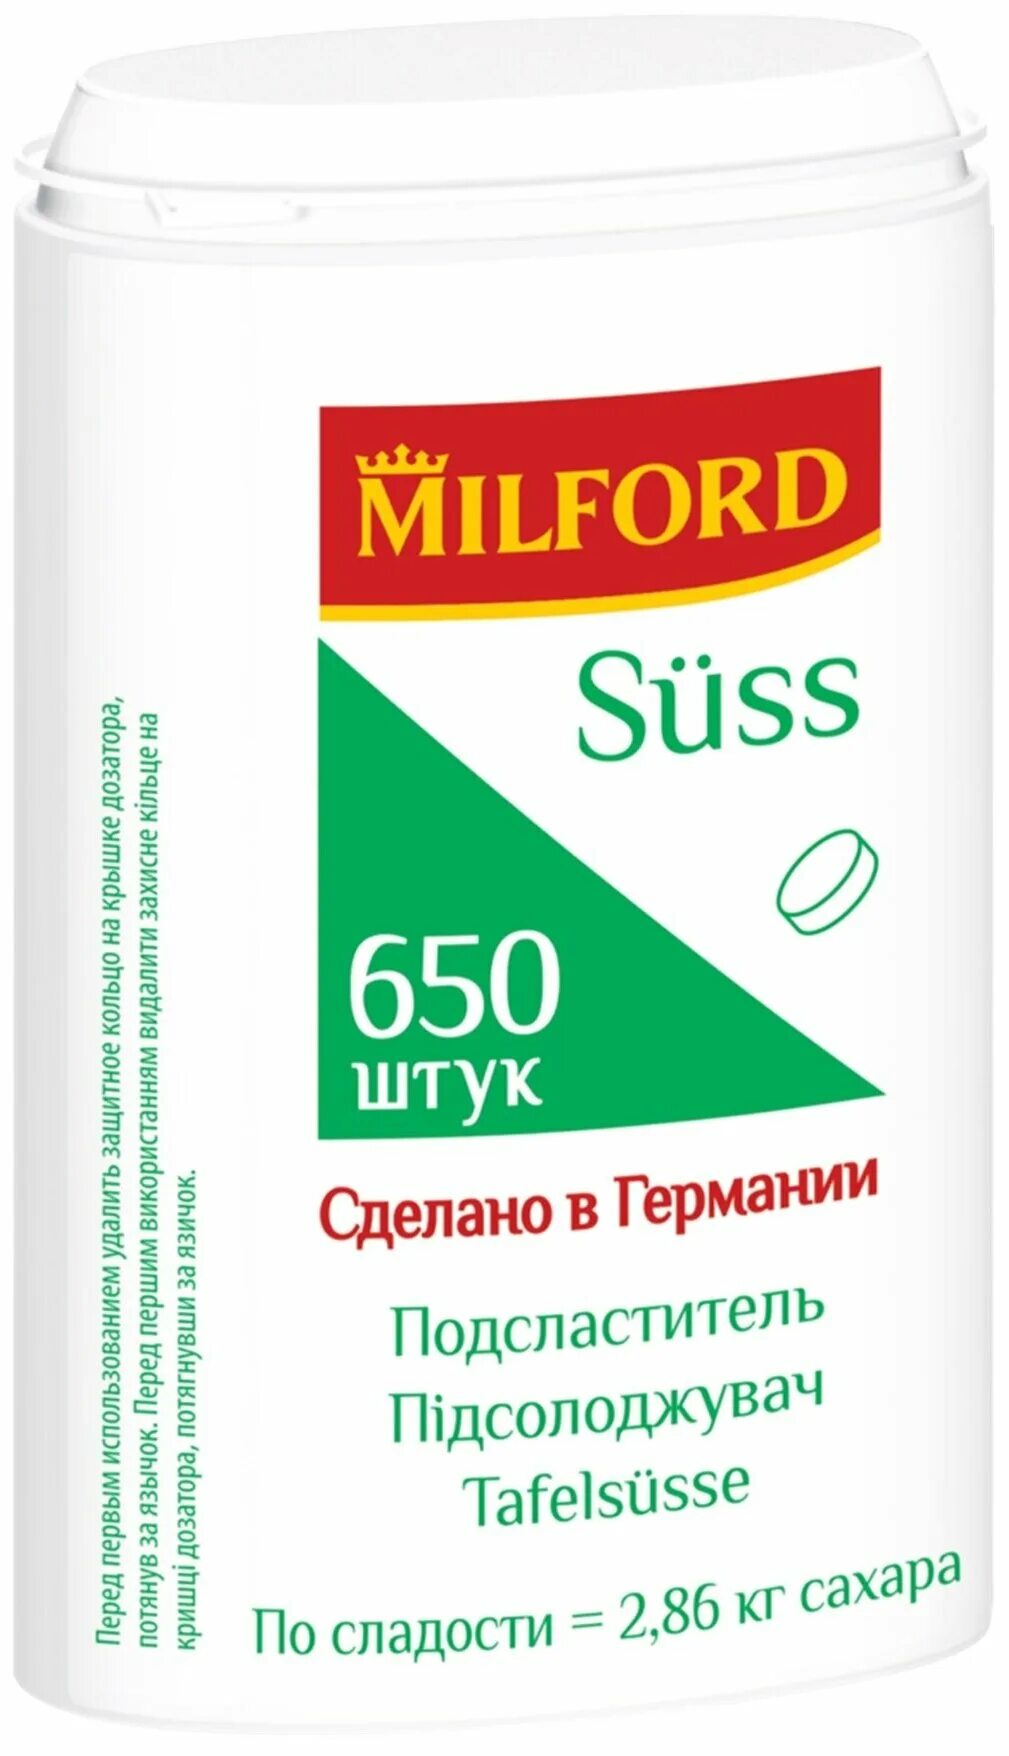 Подсластитель заменитель сахара. Milford сахарозаменитель 650. Milford Suss подсластитель 1200 шт. Заменитель сахара Milford Suss 650табл.. Milford подсластитель Suss таблетки.